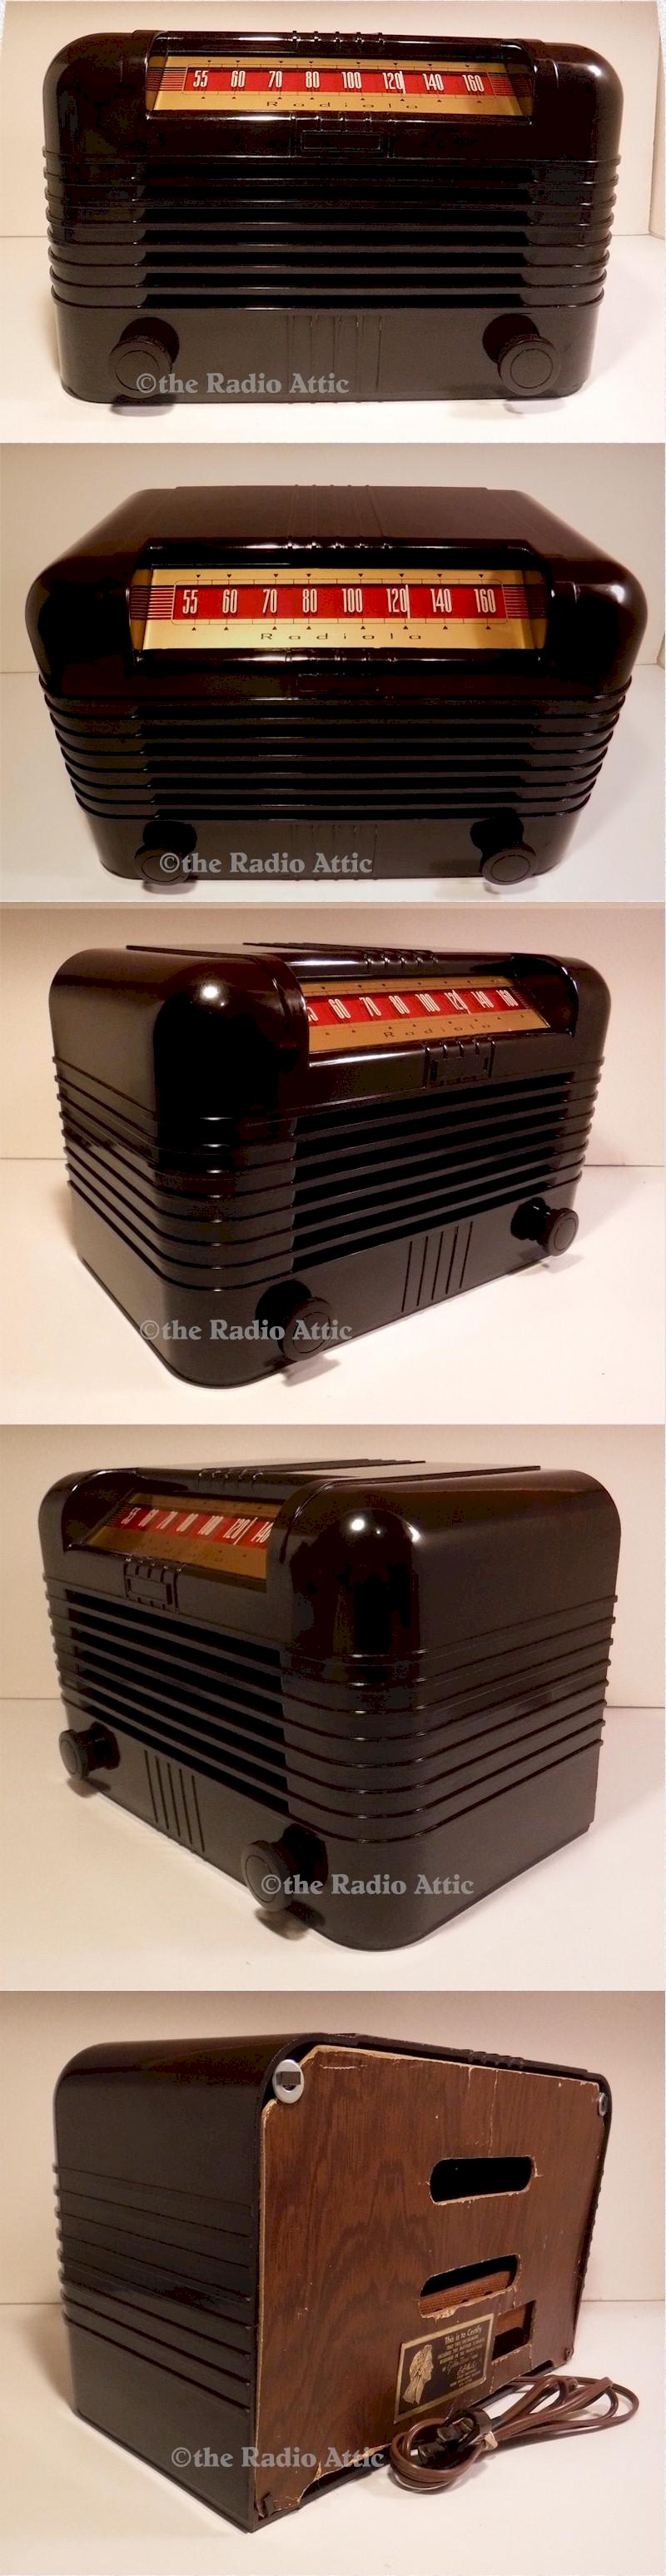 Radiola 76-ZX-11 